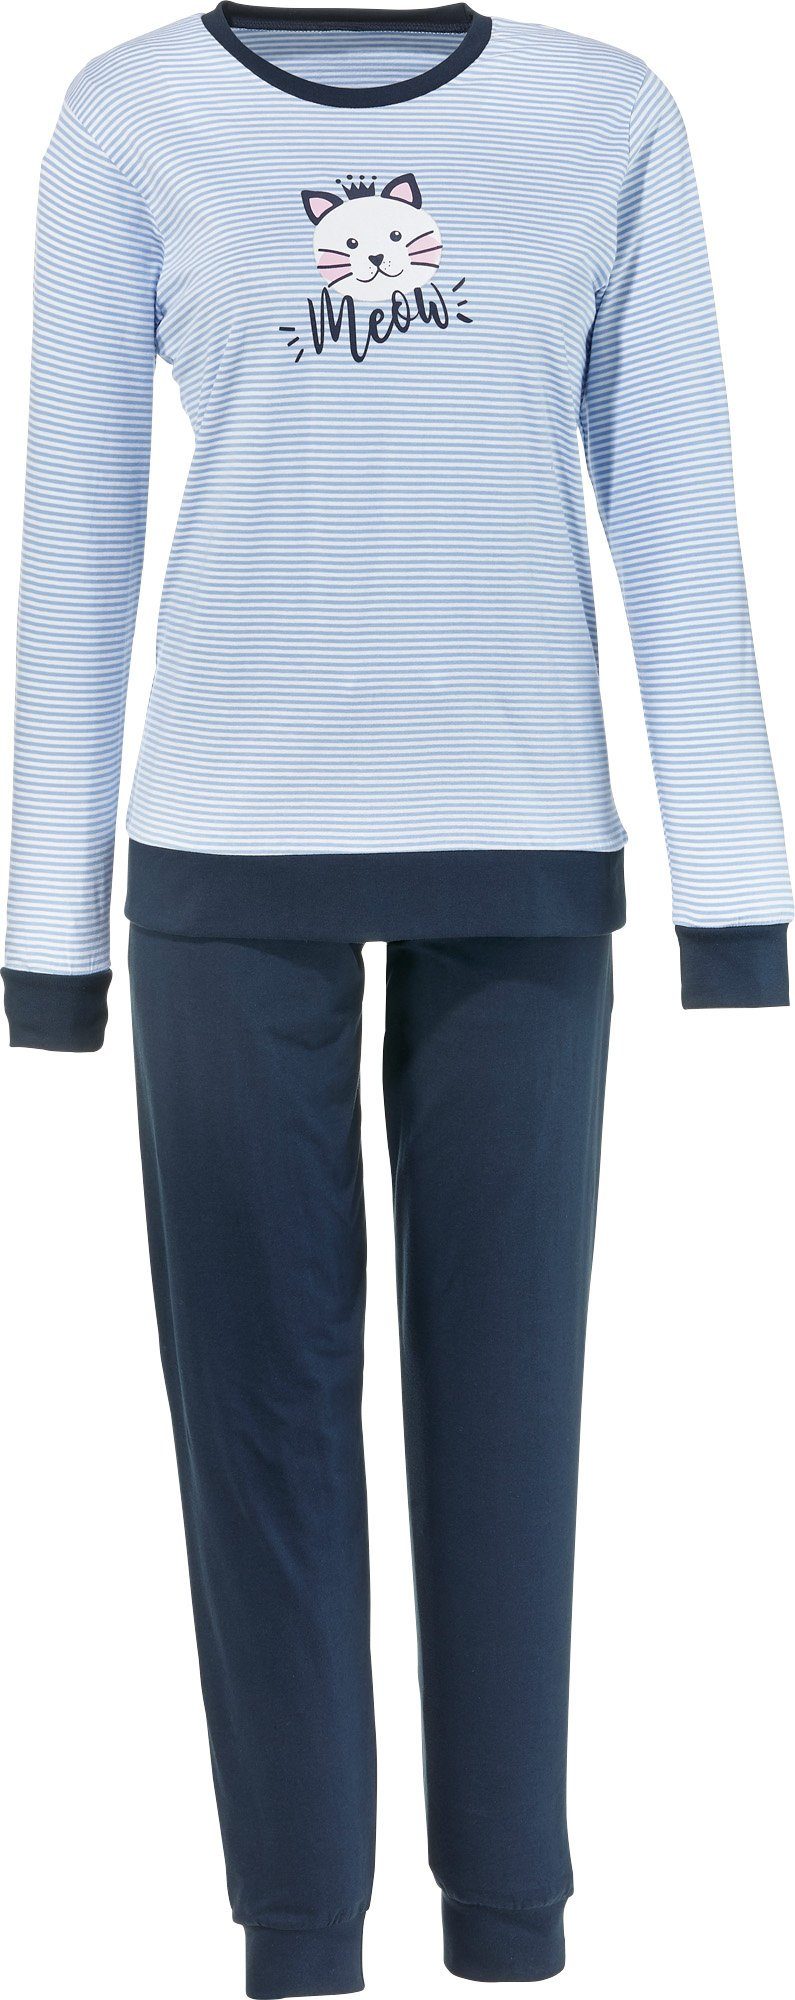 Erwin Müller Pyjama Damen-Schlafanzug Streifen Single-Jersey